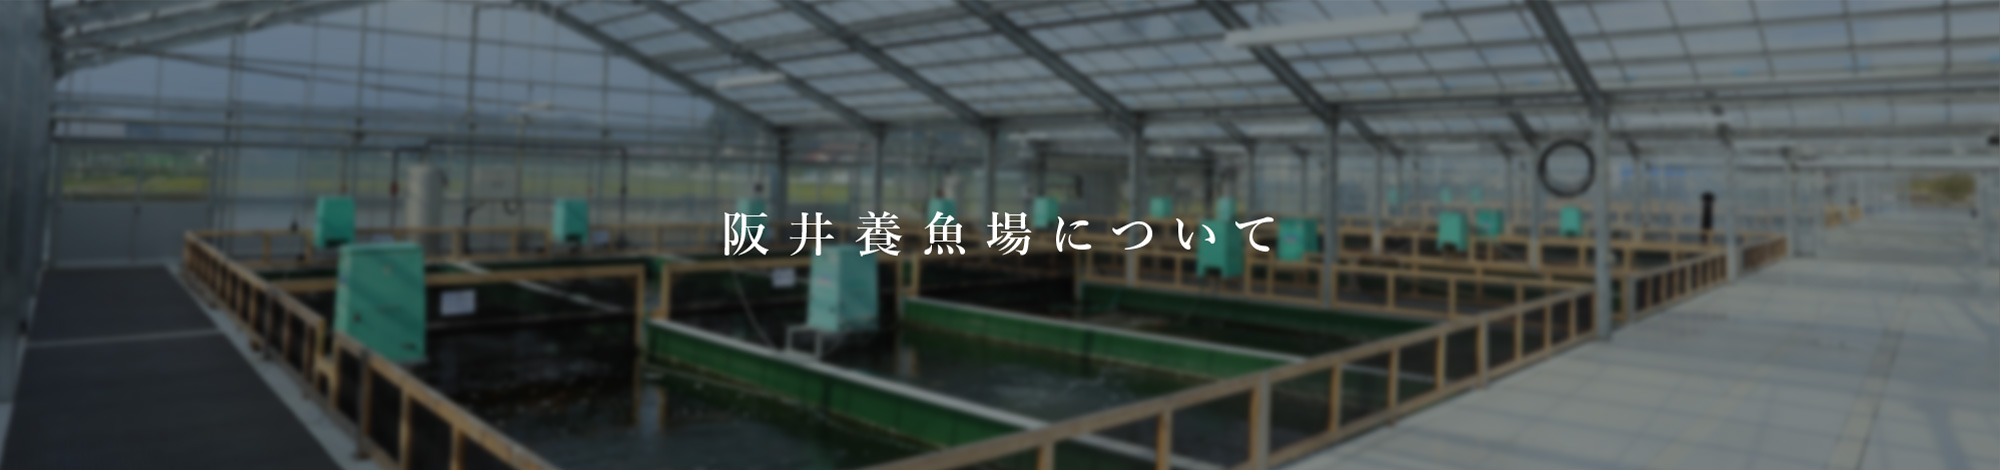 阪井養魚場について